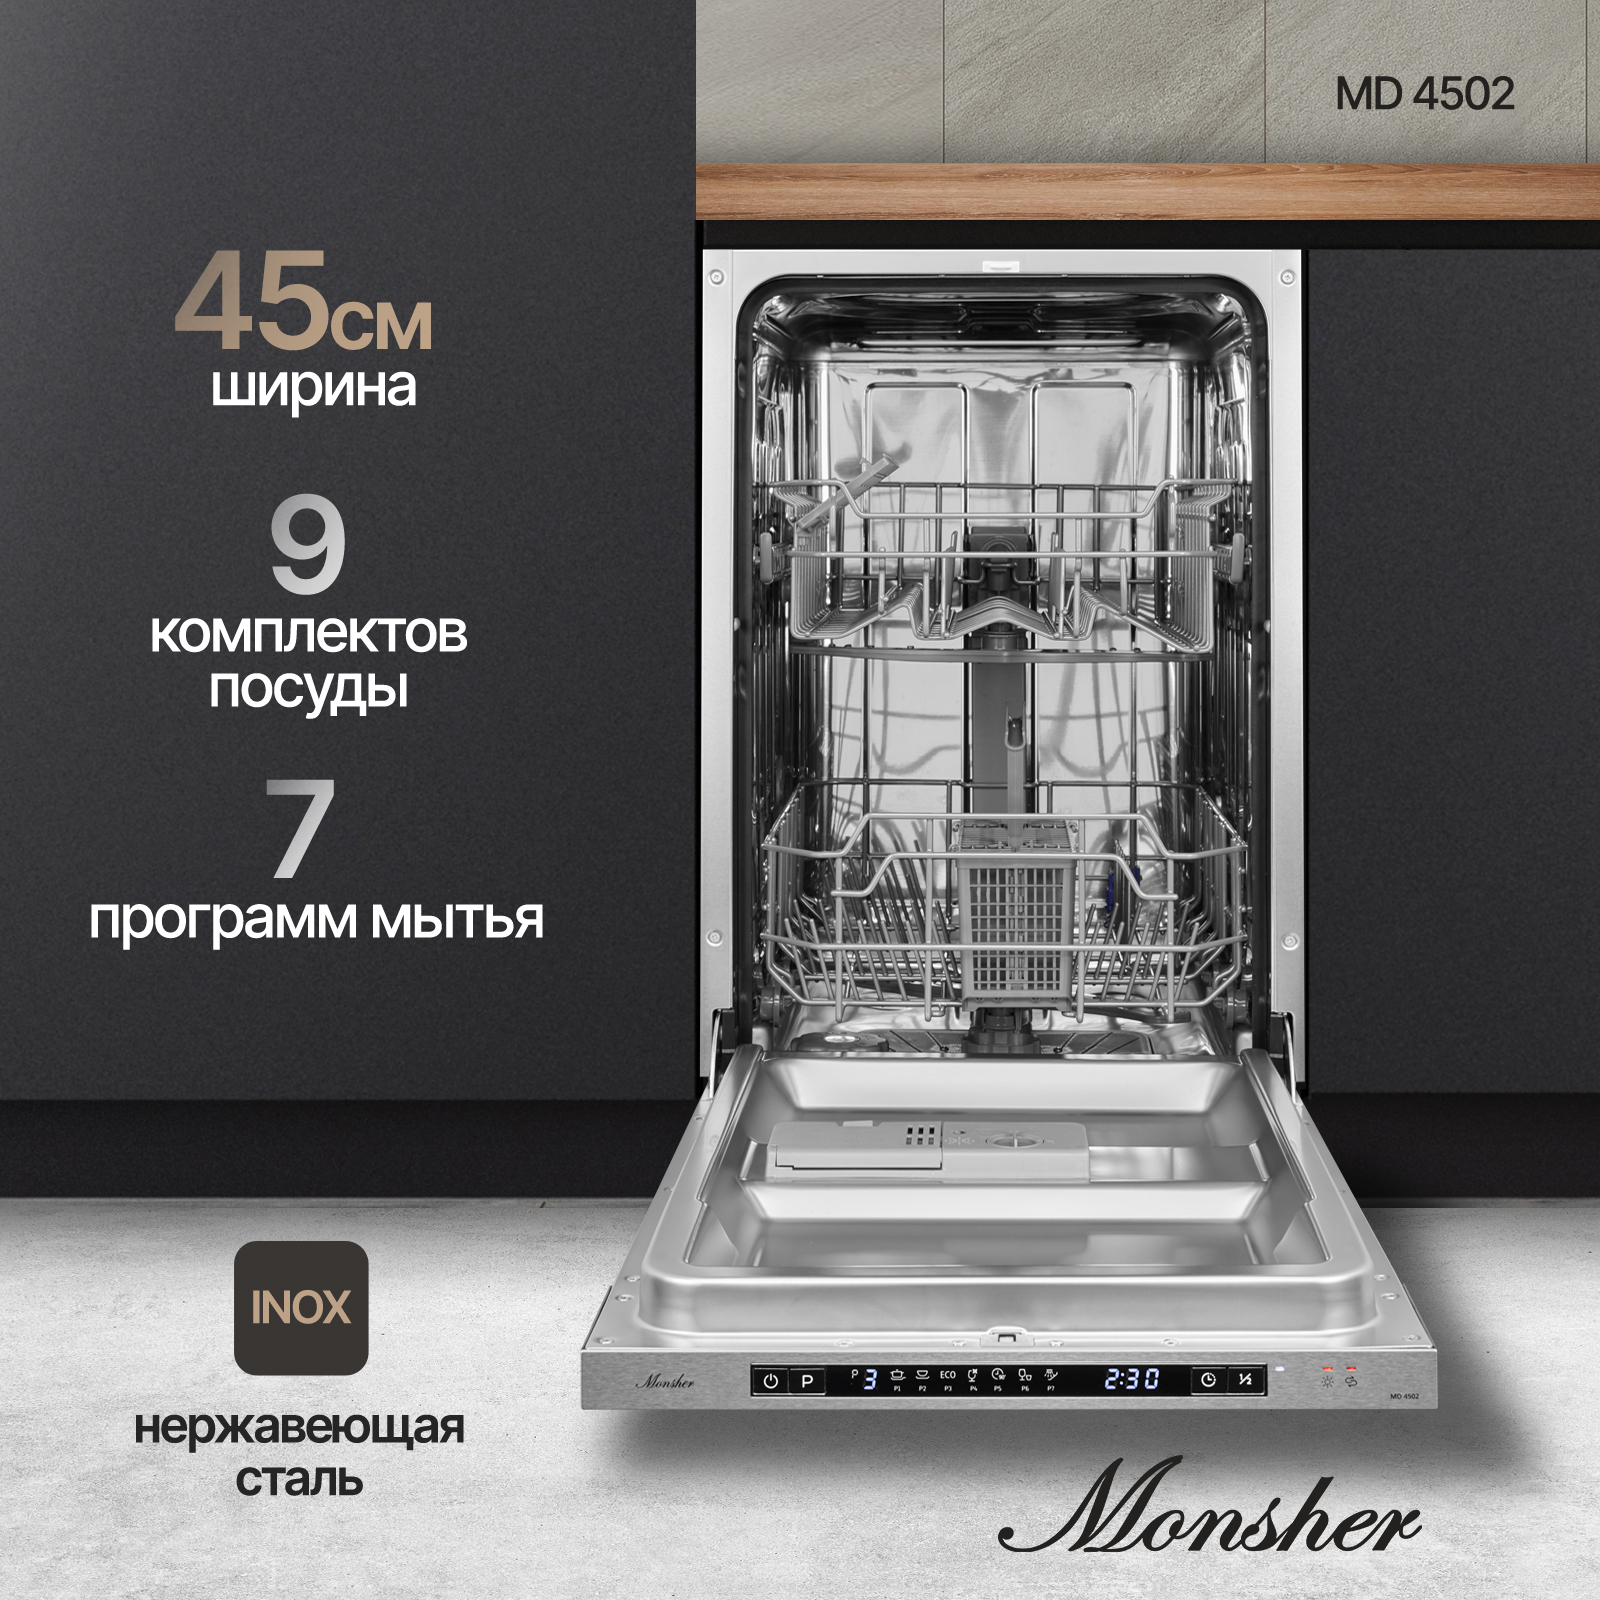 Встраиваемая посудомоечная машина Monsher MD 4502 посудомоечная машина monsher mdf 5506 blanc